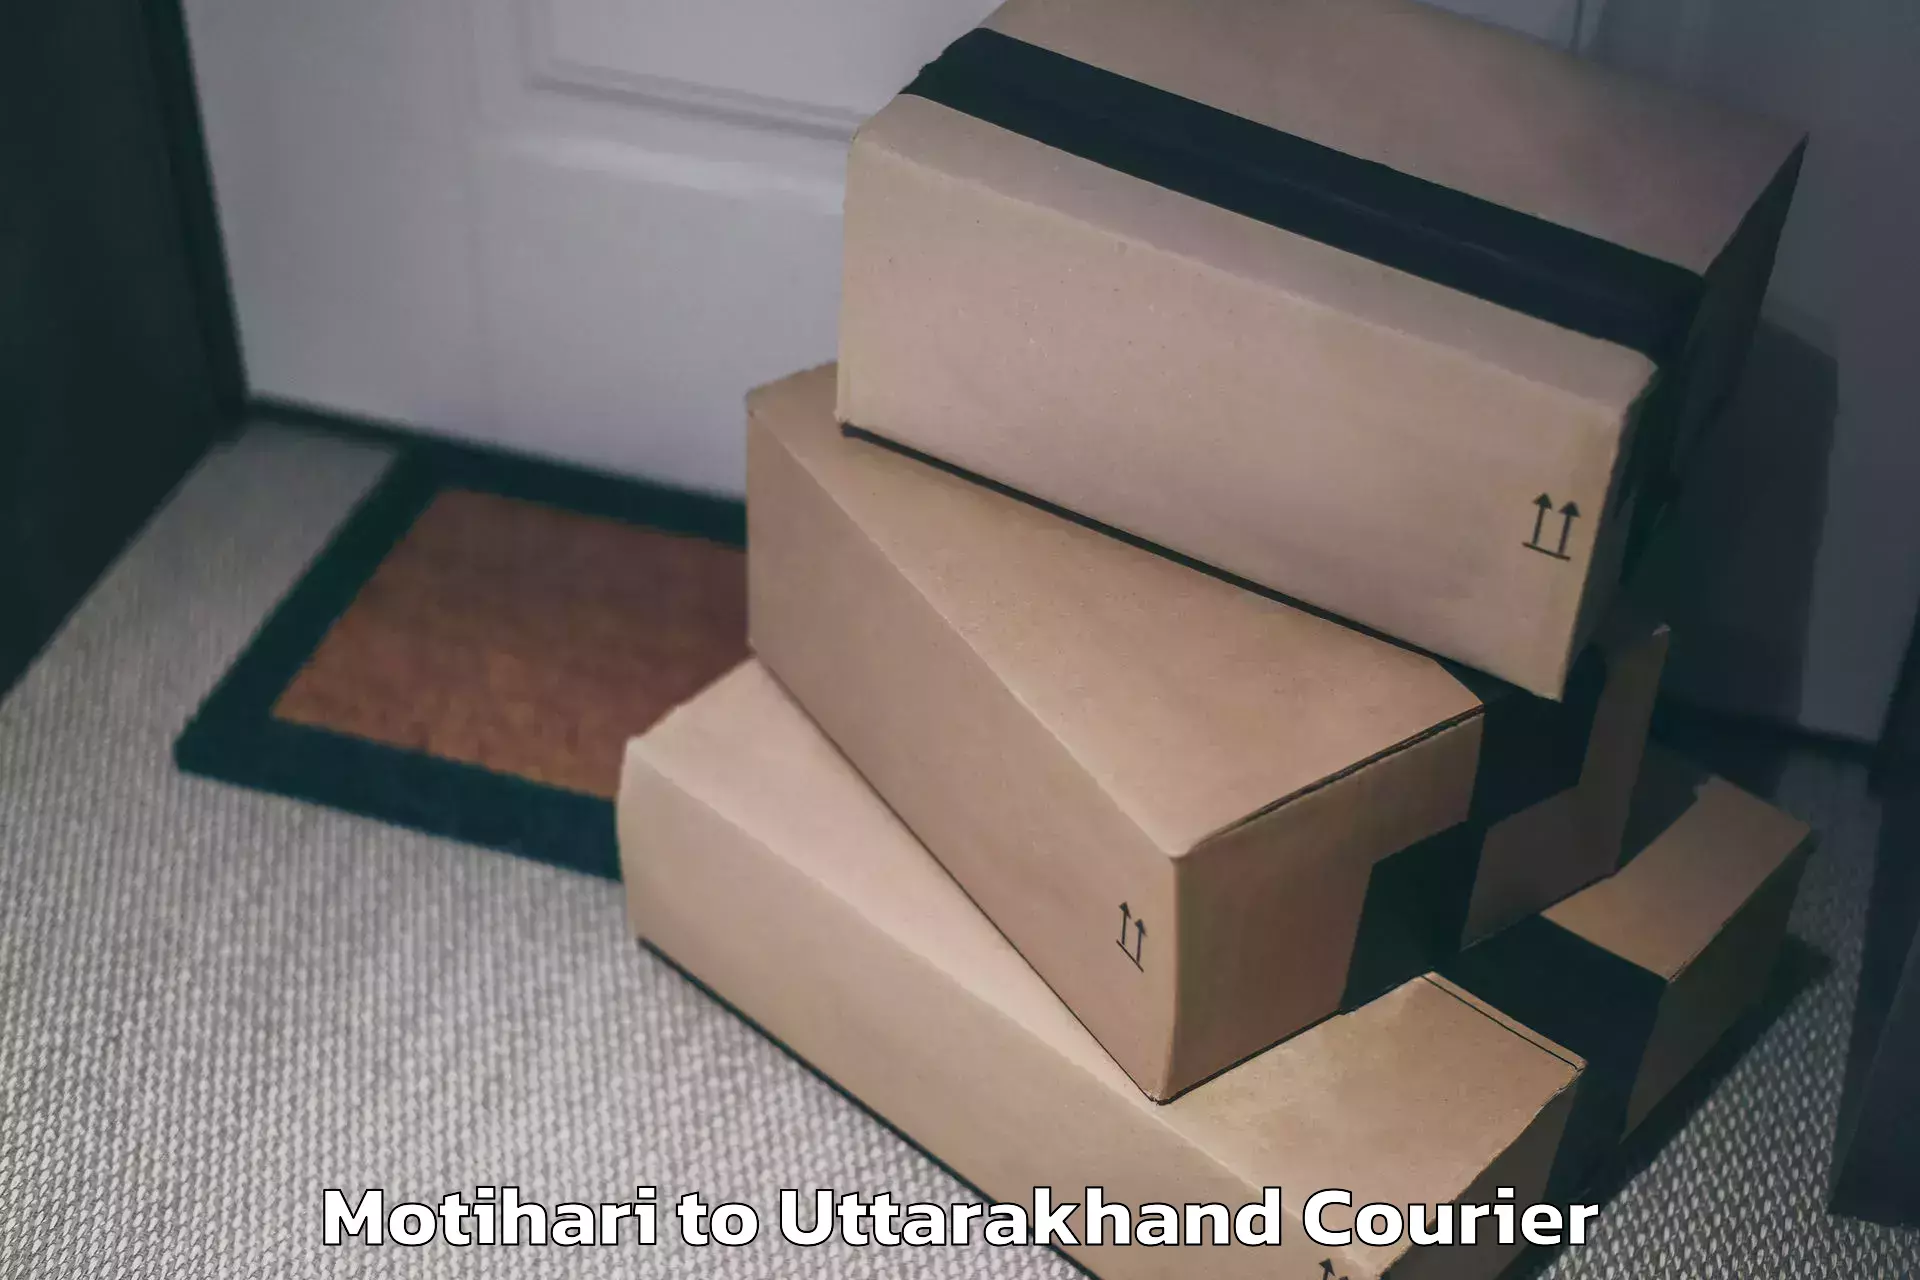 Luggage delivery optimization Motihari to Uttarakhand